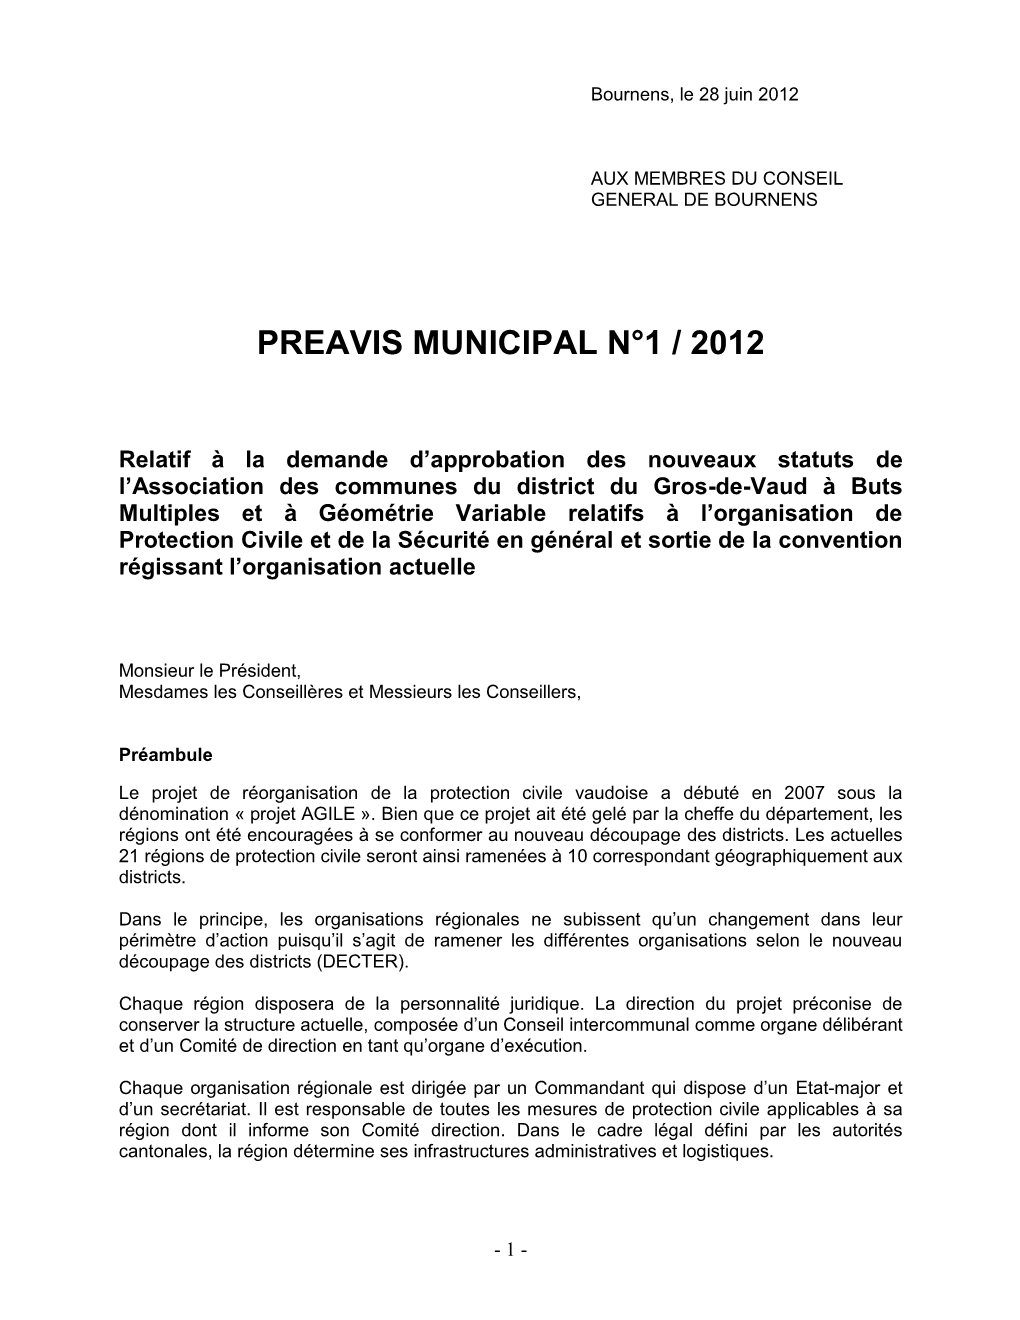 Préavis ORPC District Gros-De-Vaud